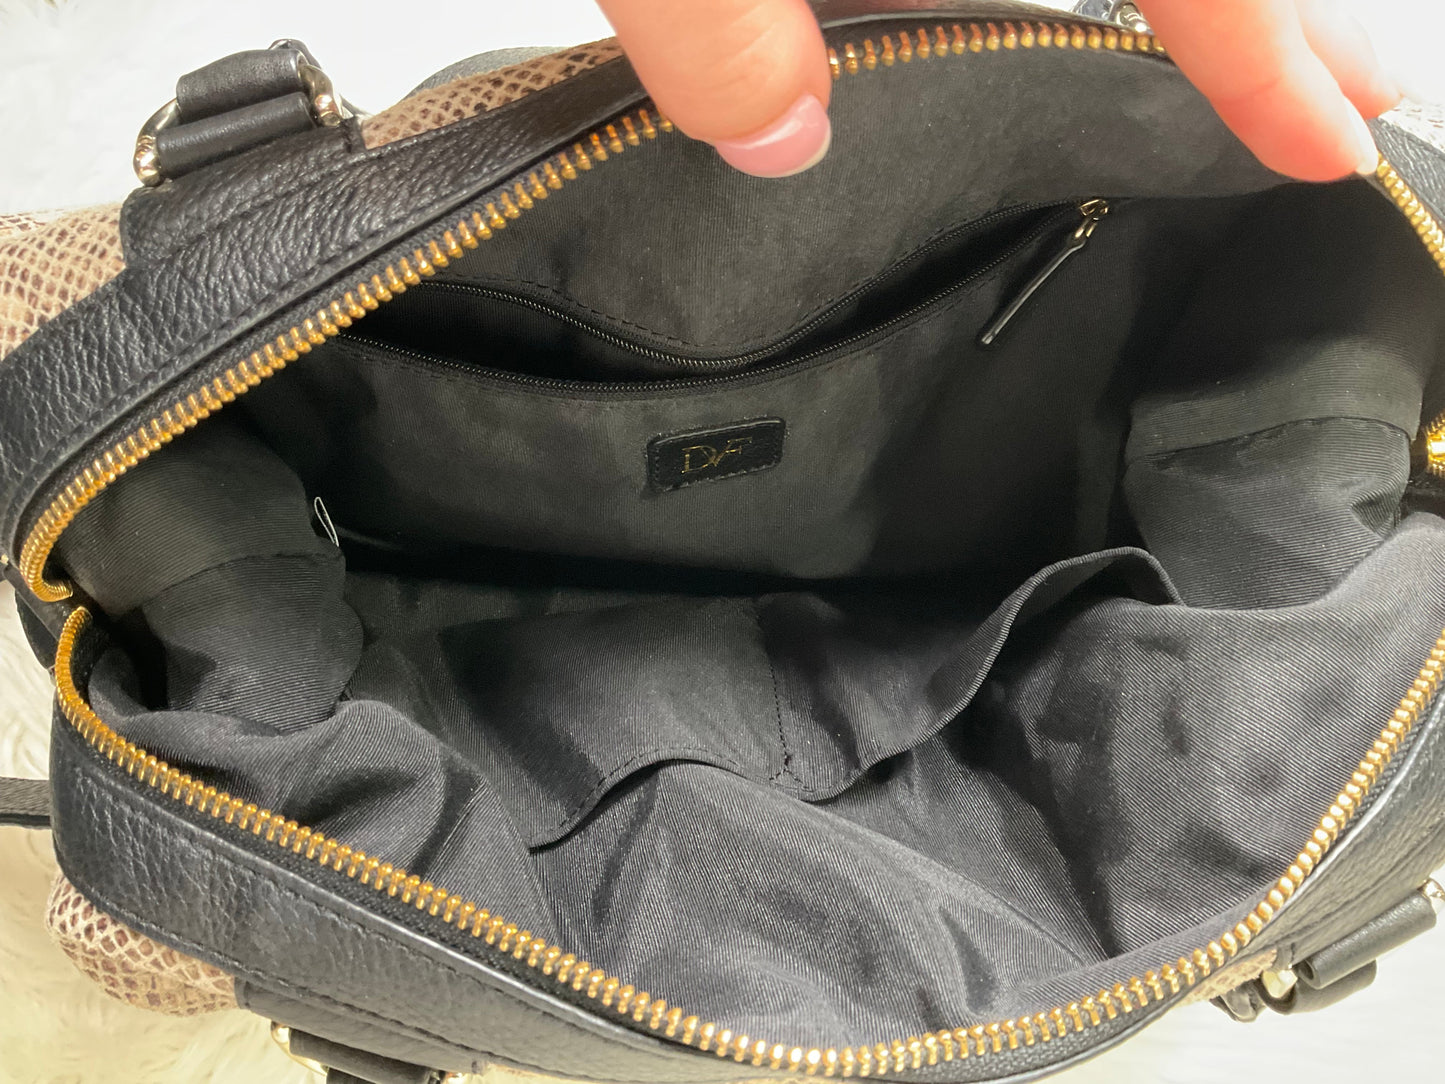 Handbag By Diane Von Furstenberg  Size: Medium